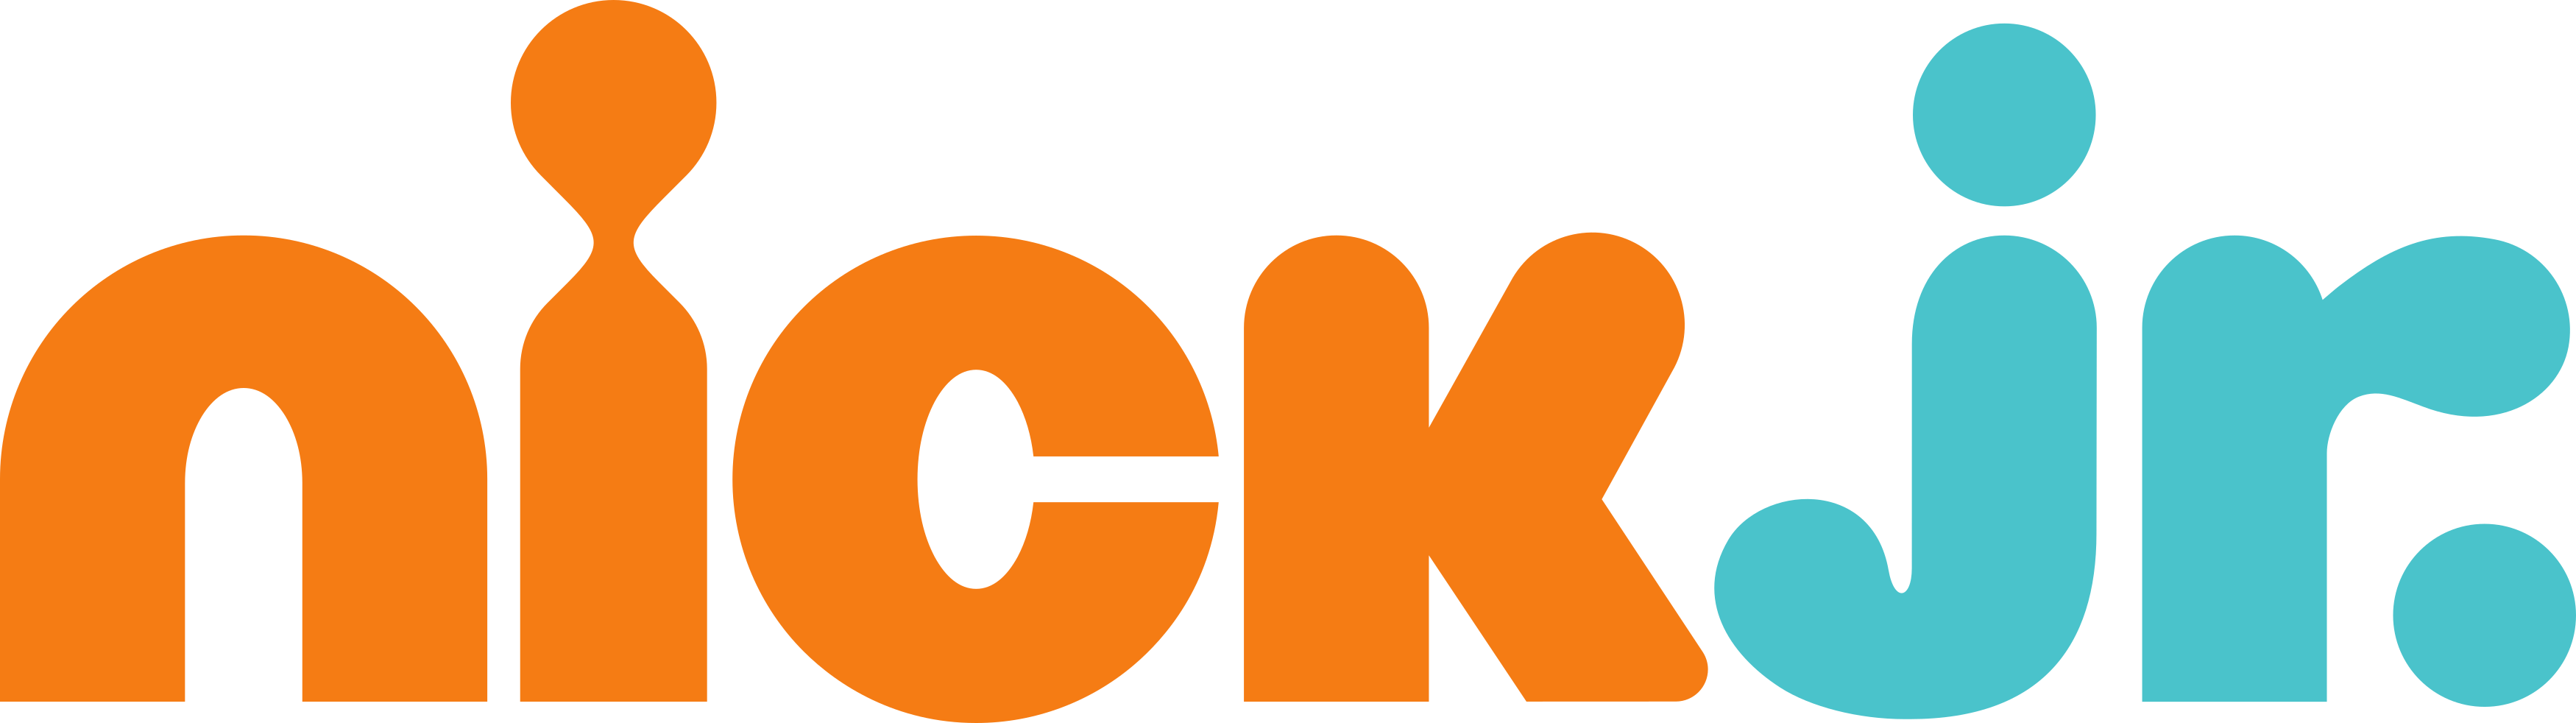 nick jr logo - Nick Jr Logo